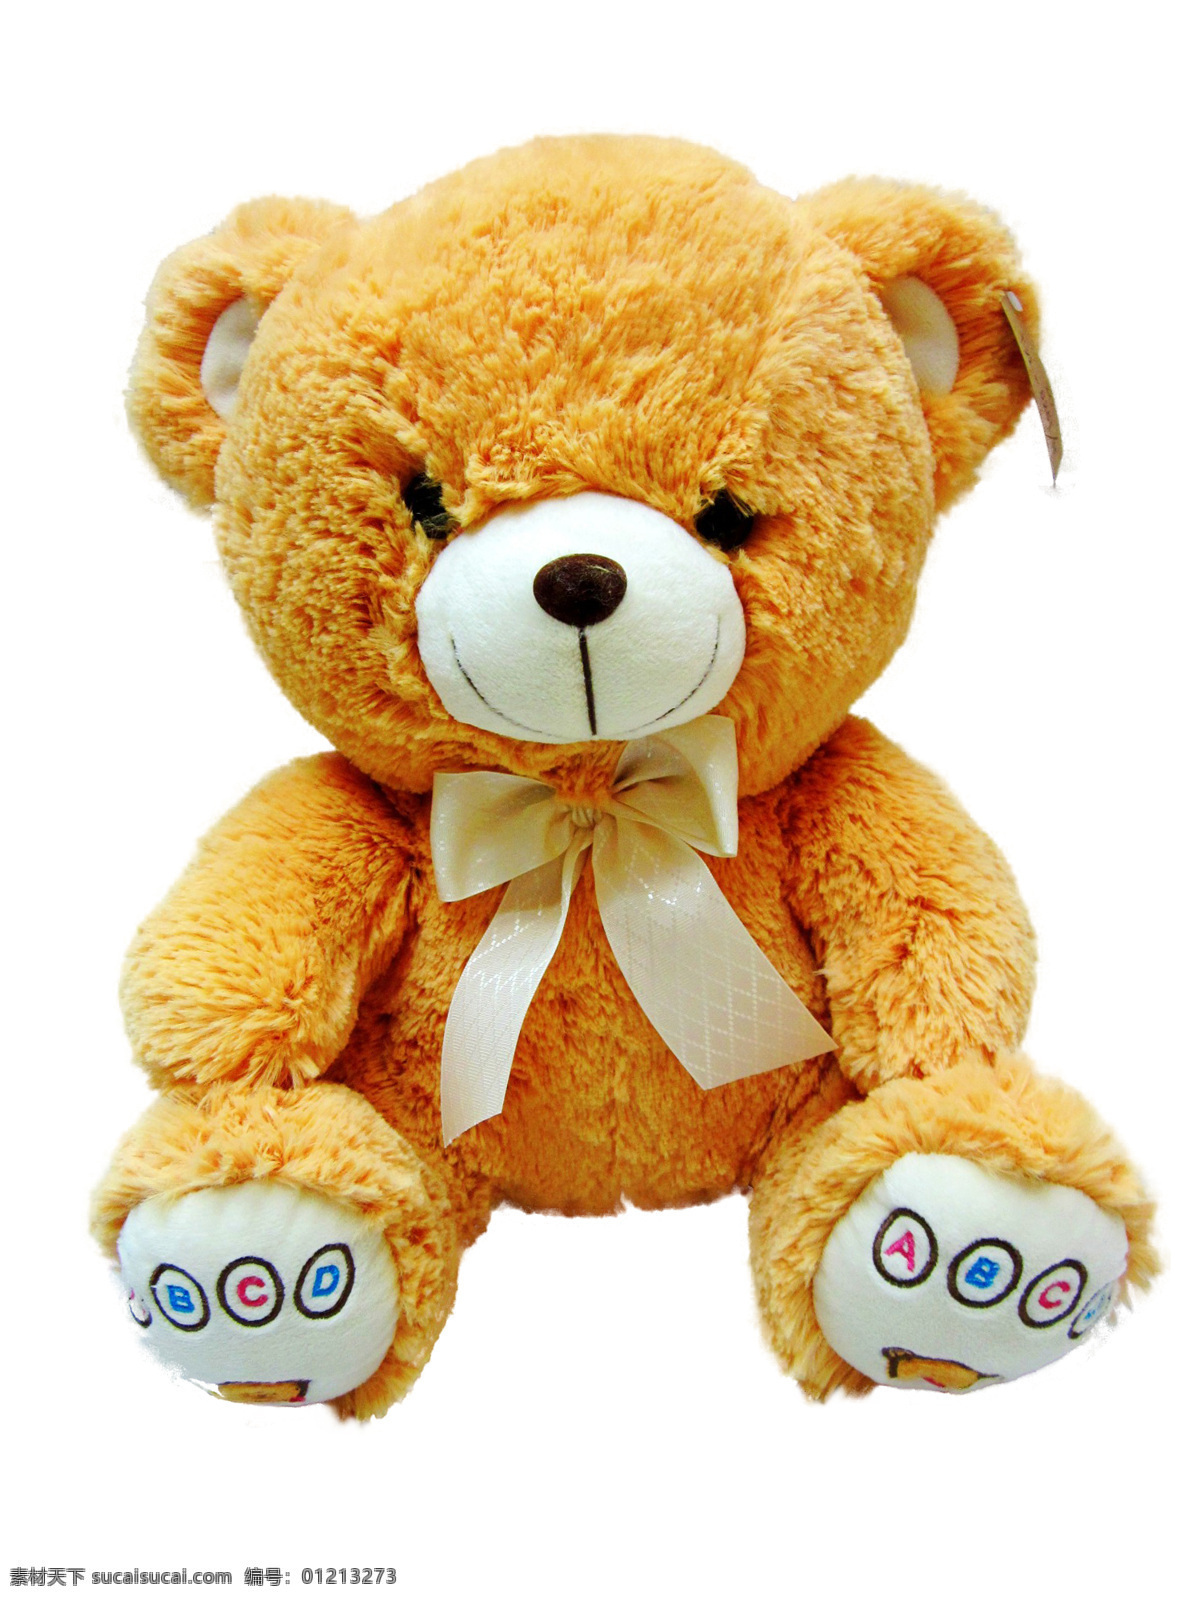 泰迪 熊 好看 家居生活 可爱 毛绒玩具 漂亮 生活百科 泰迪熊 棕色